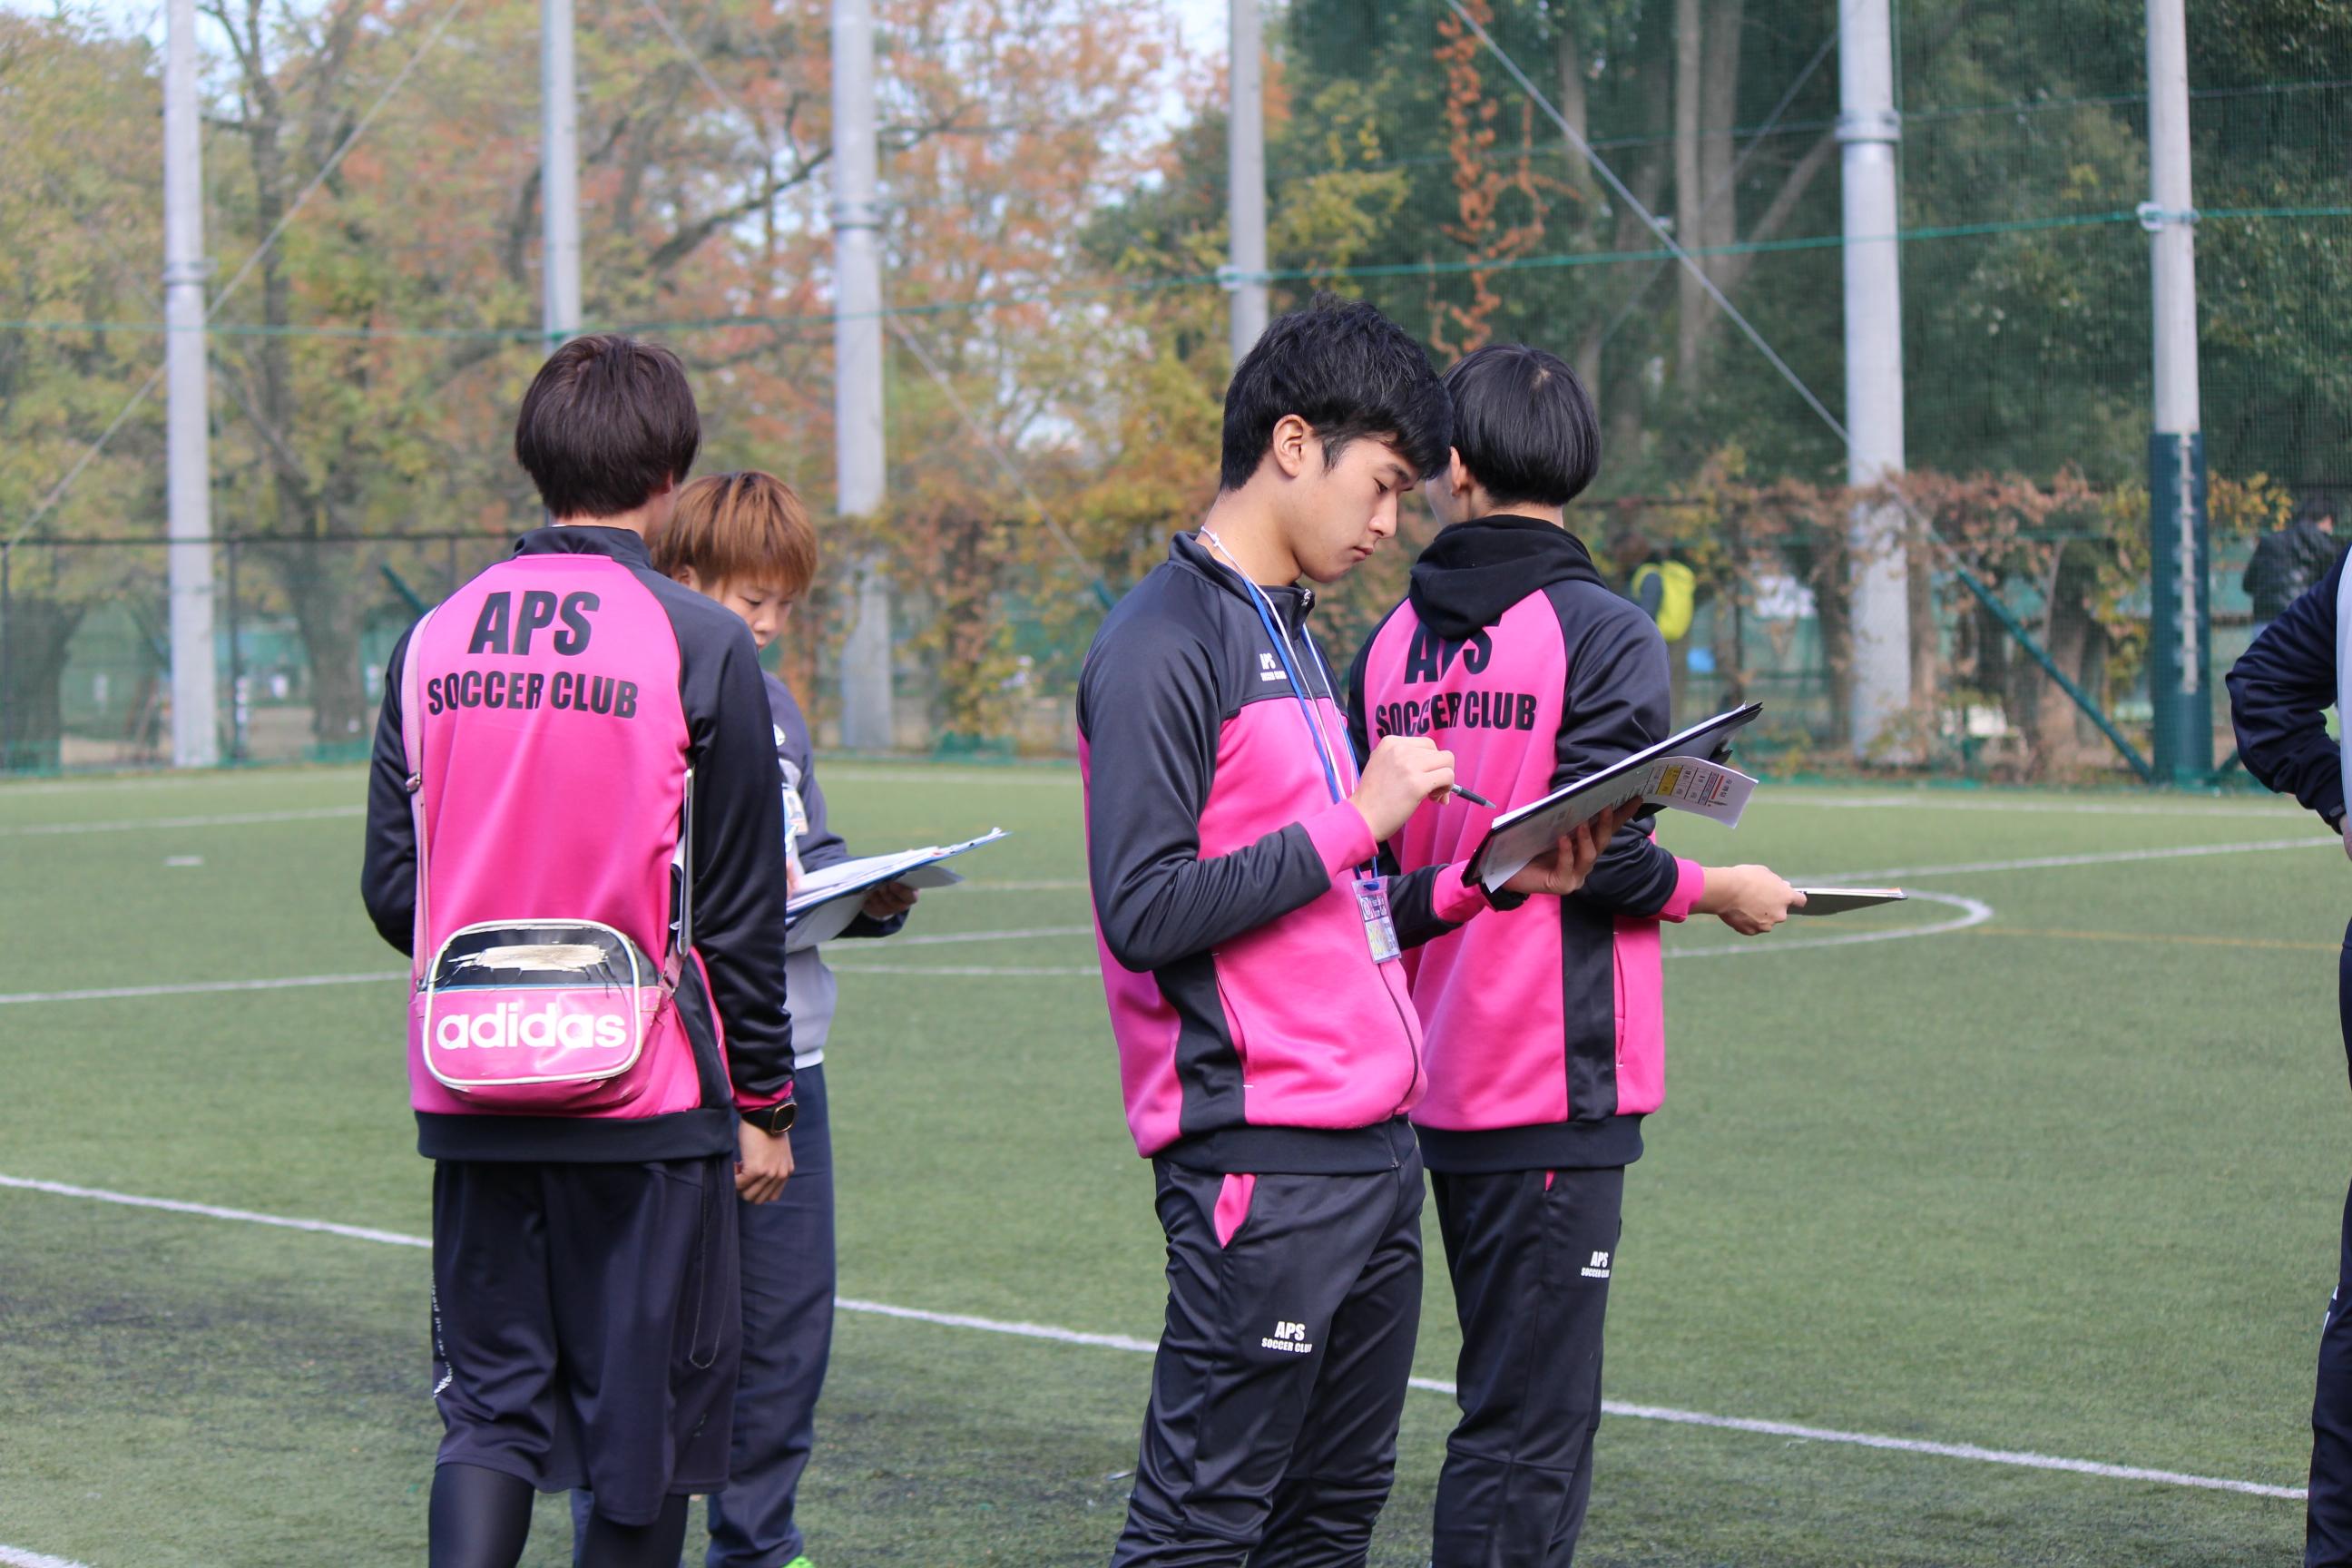 横浜市サッカースクール先生 コーチ アルバイト大募集 スポーツ サッカー業界の求人情報 アルバイトを探すならスポキャリ